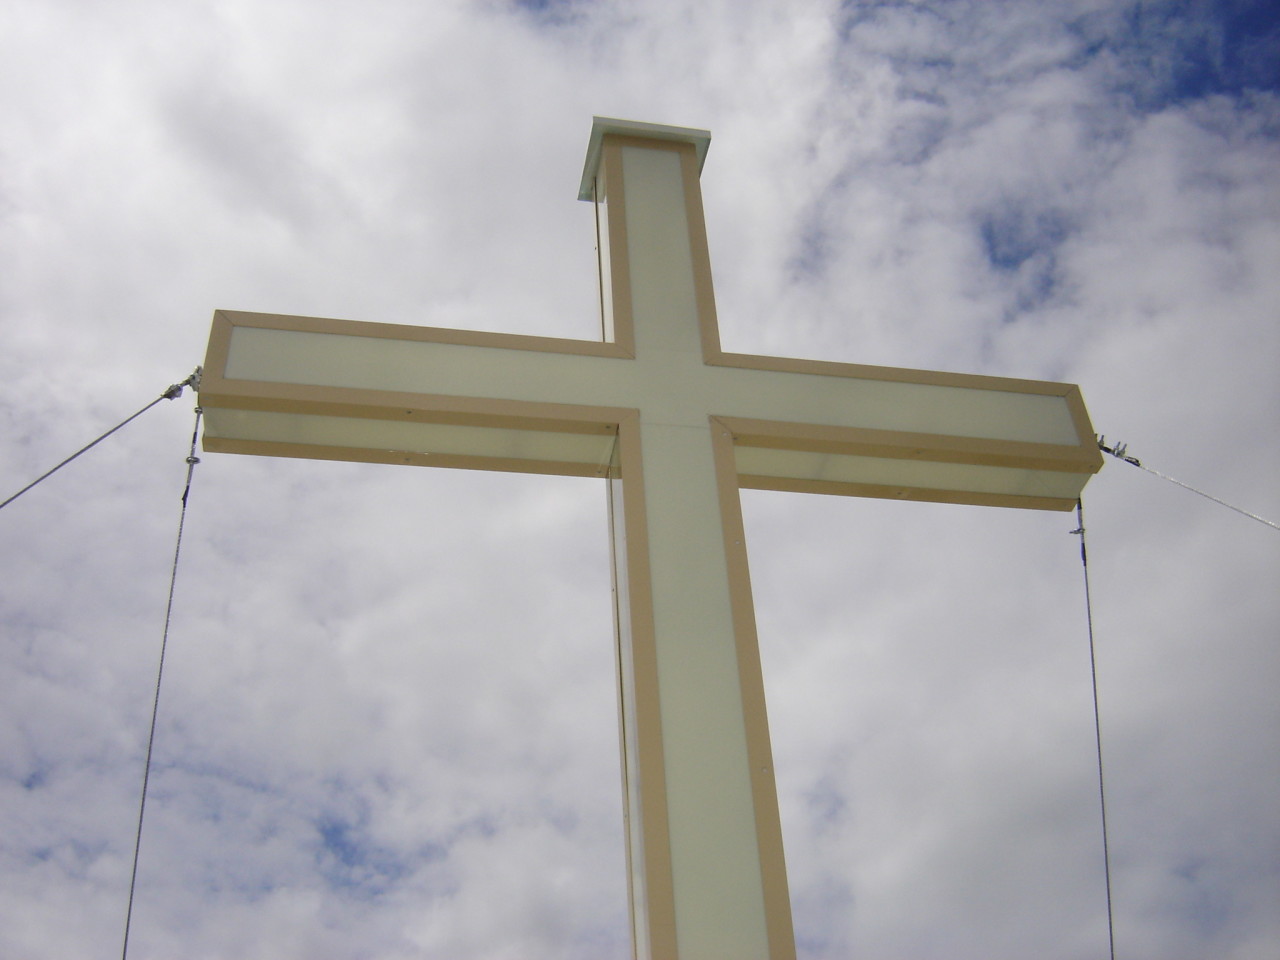 Installazione nuova Croce campanile.